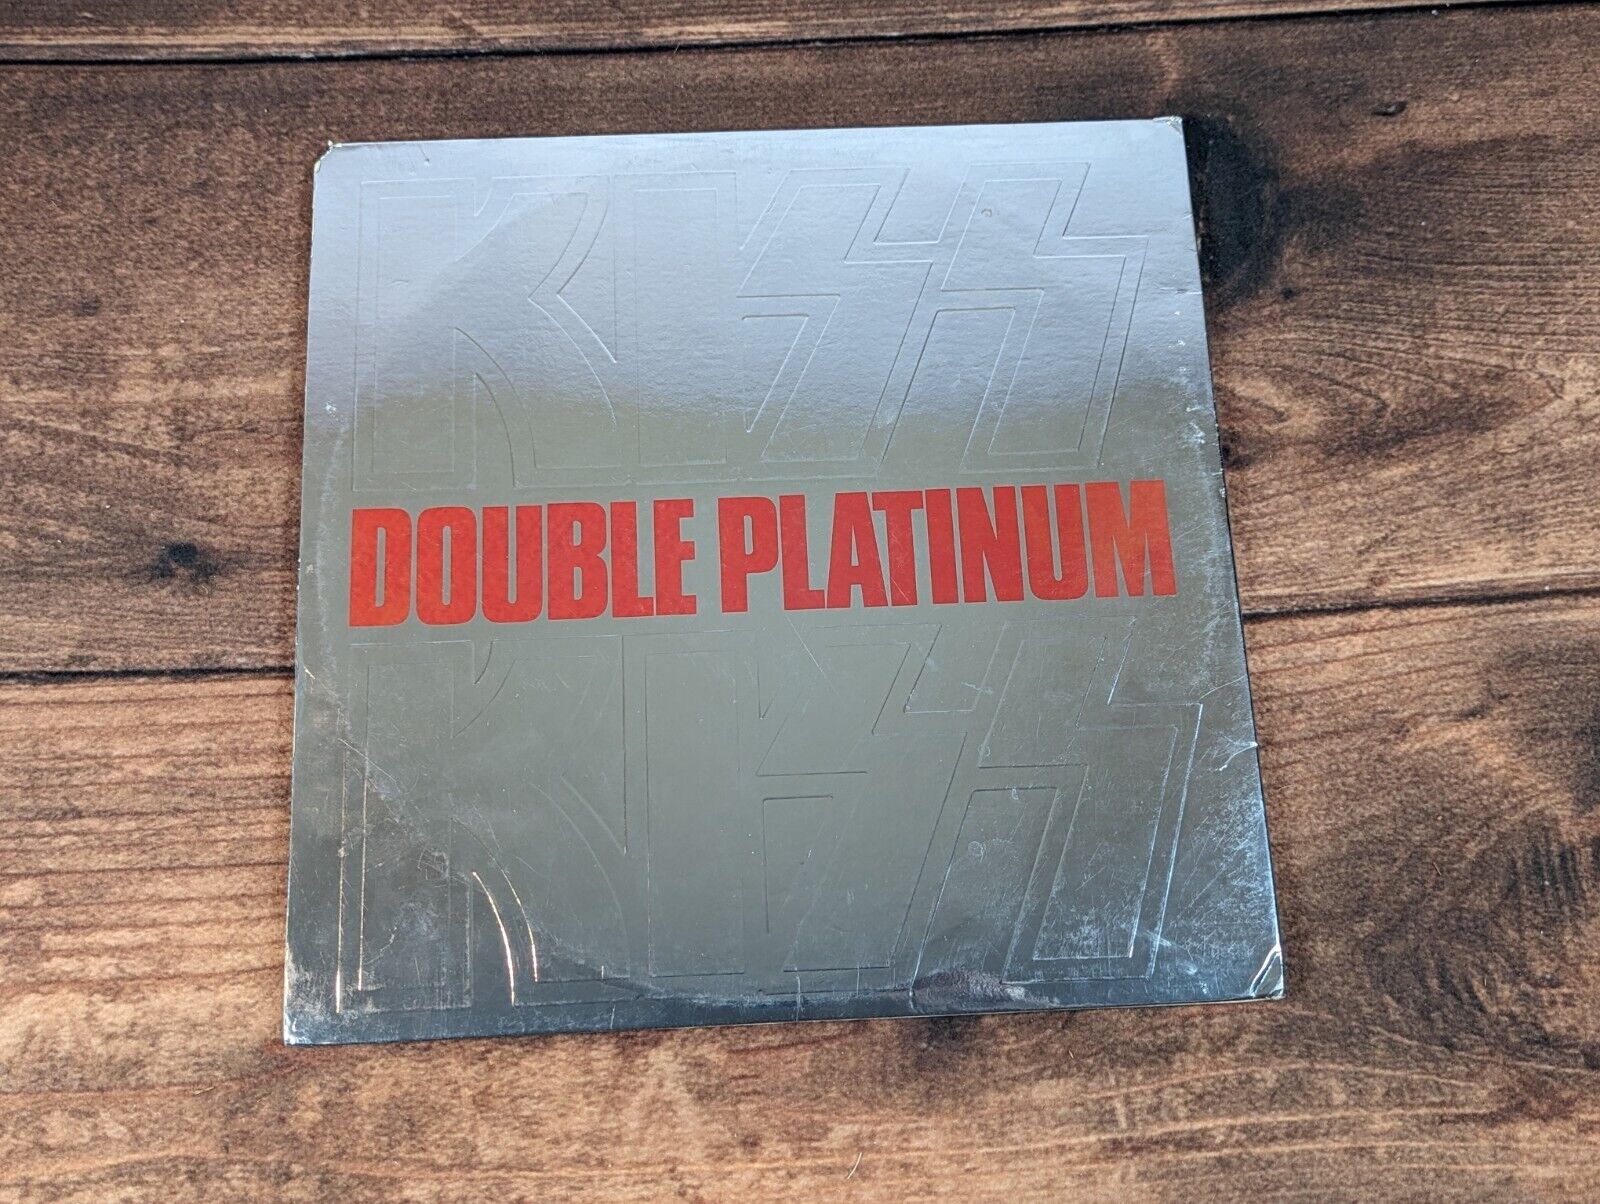 KISS - Double Platinum - Vinyl 2LP NBLP-7100-2 Casablanca Rock 1978